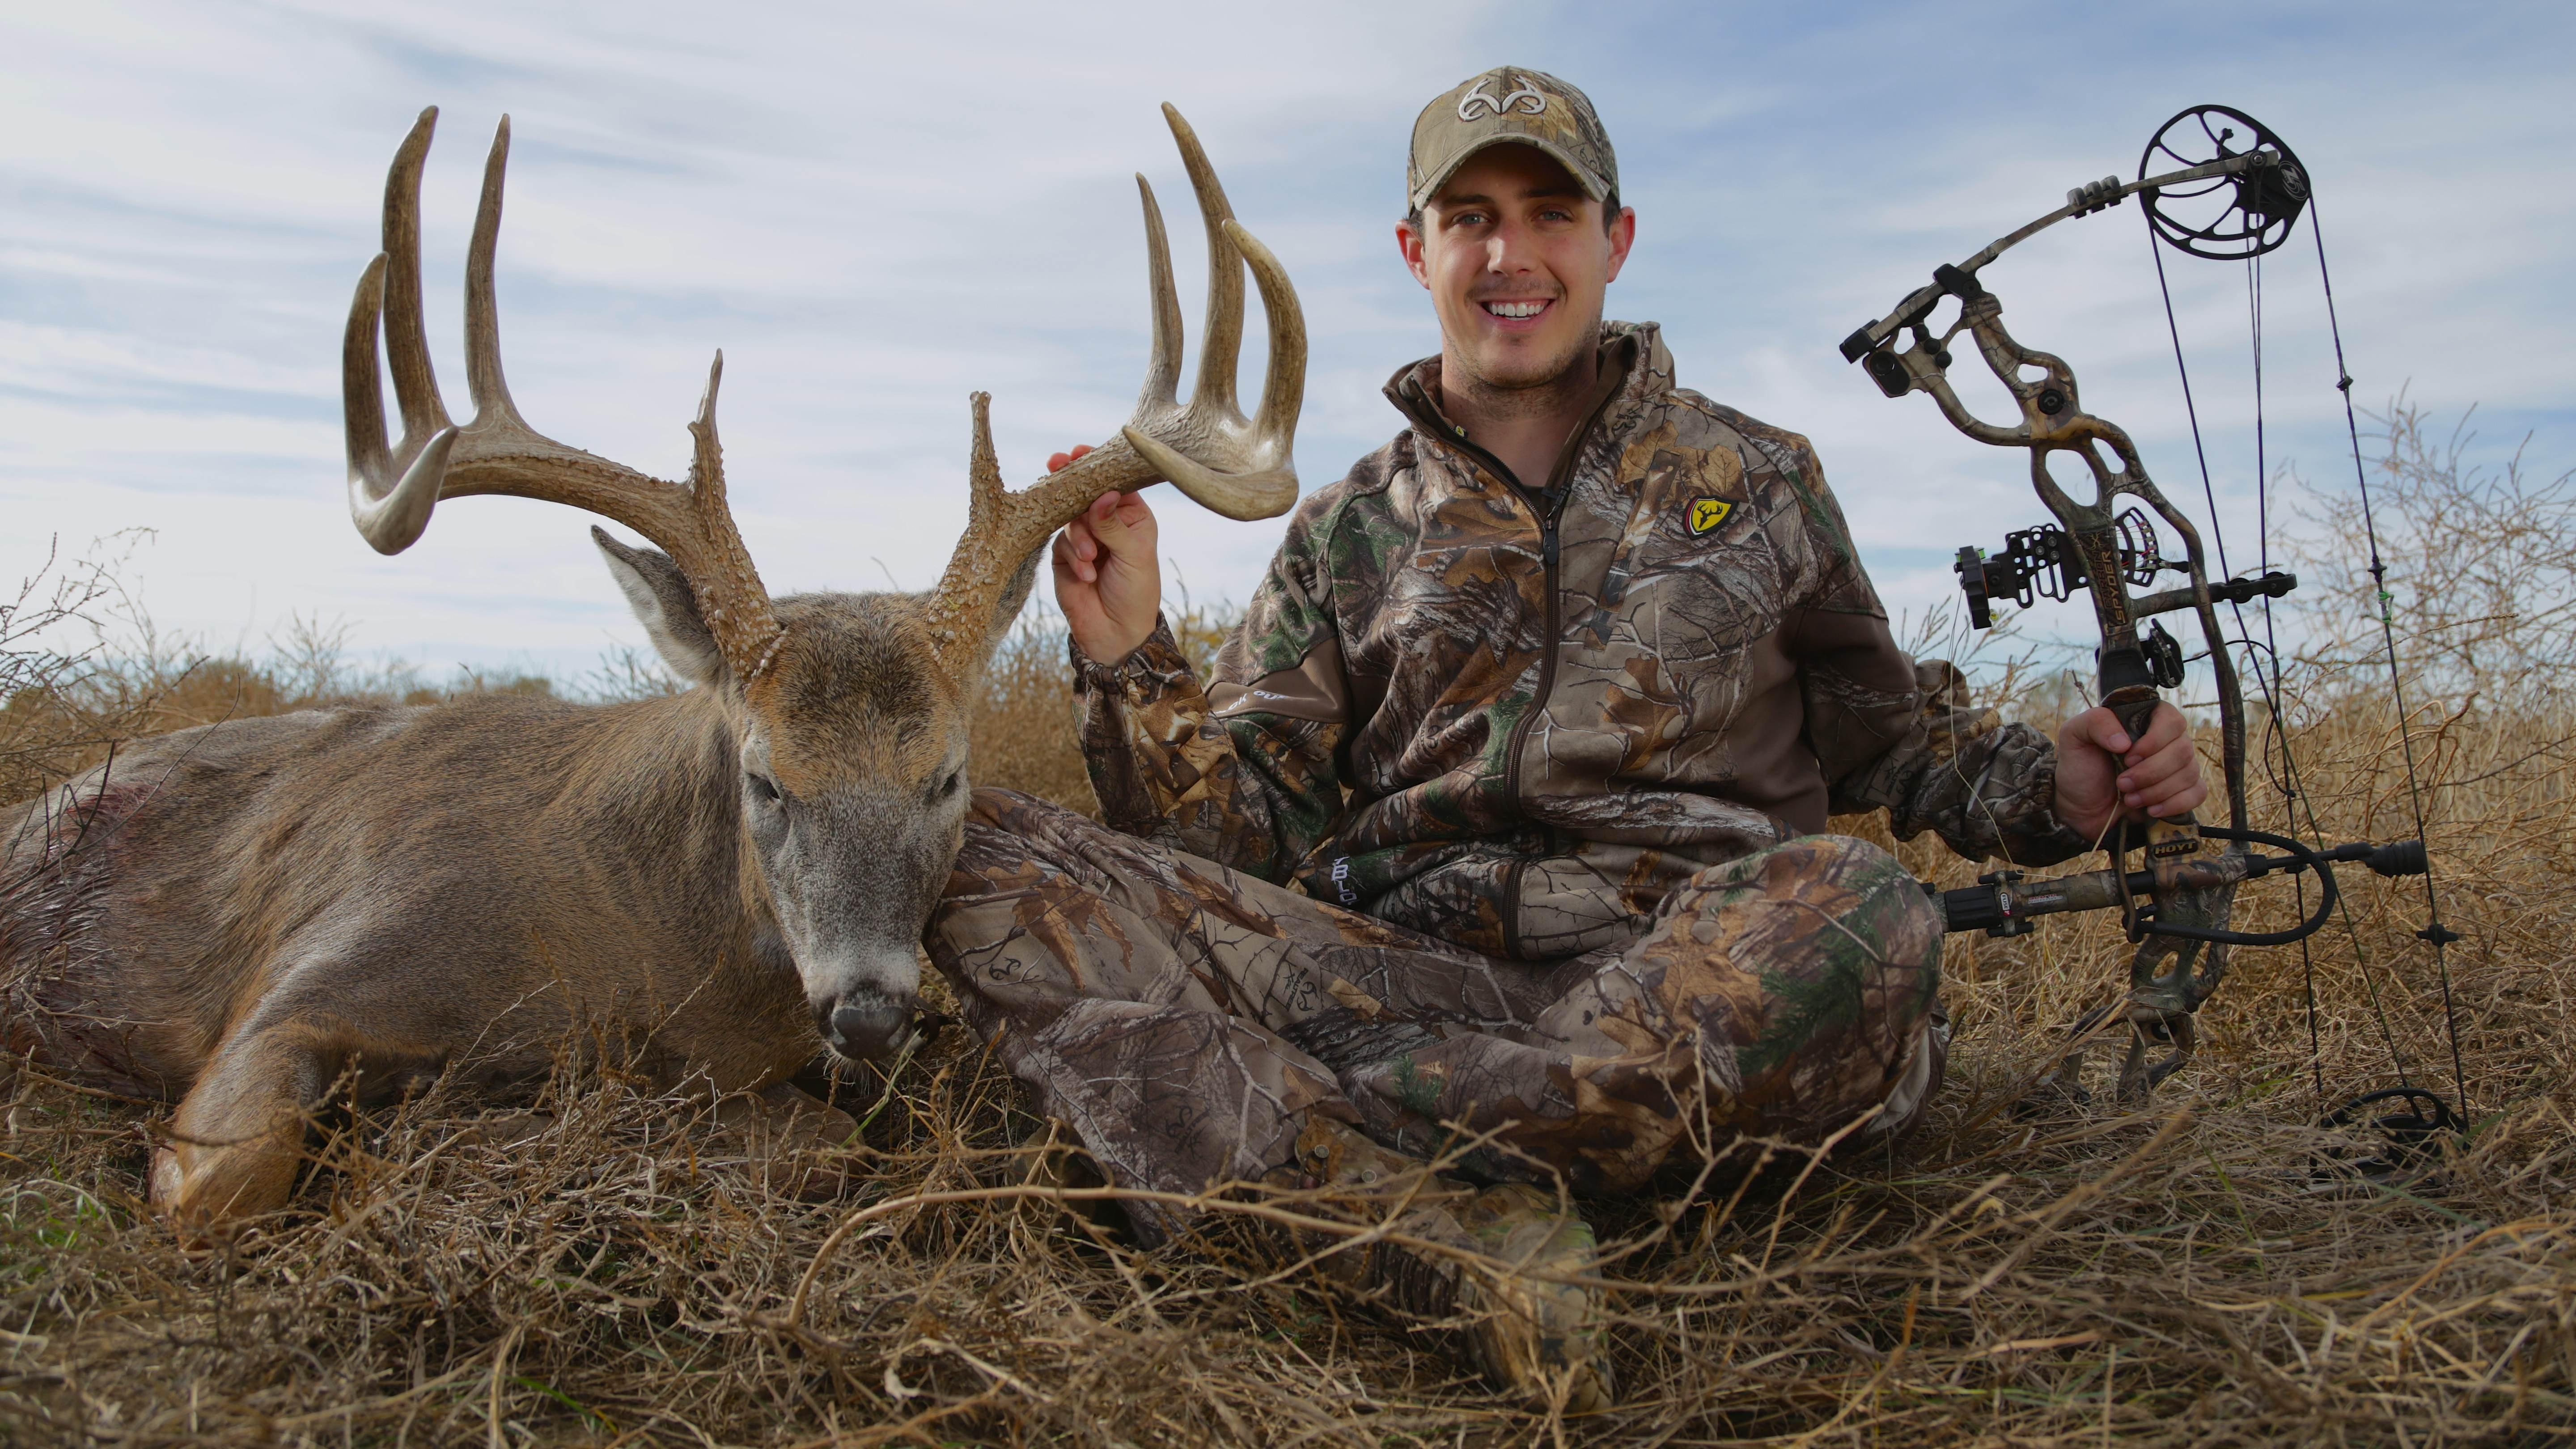 Tyler Jordan offers 10 tips for better deer hunting. (Photo courtesy of Tyler Jordan)